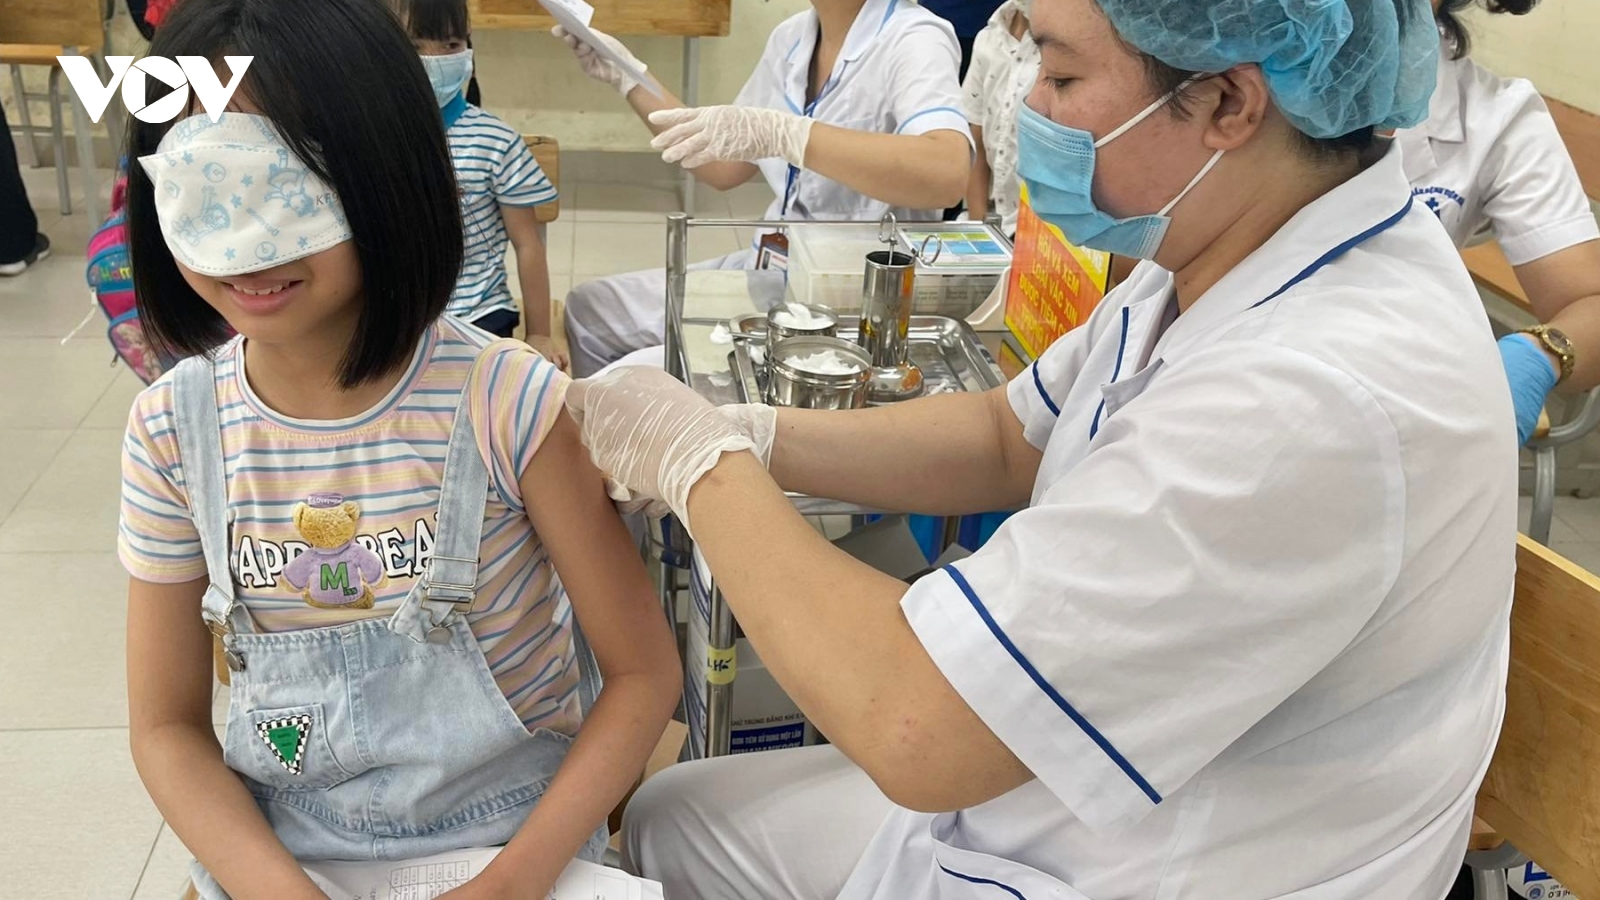 Phụ huynh thay đổi quyết định, cho con tiêm vaccine để năm học mới an toàn